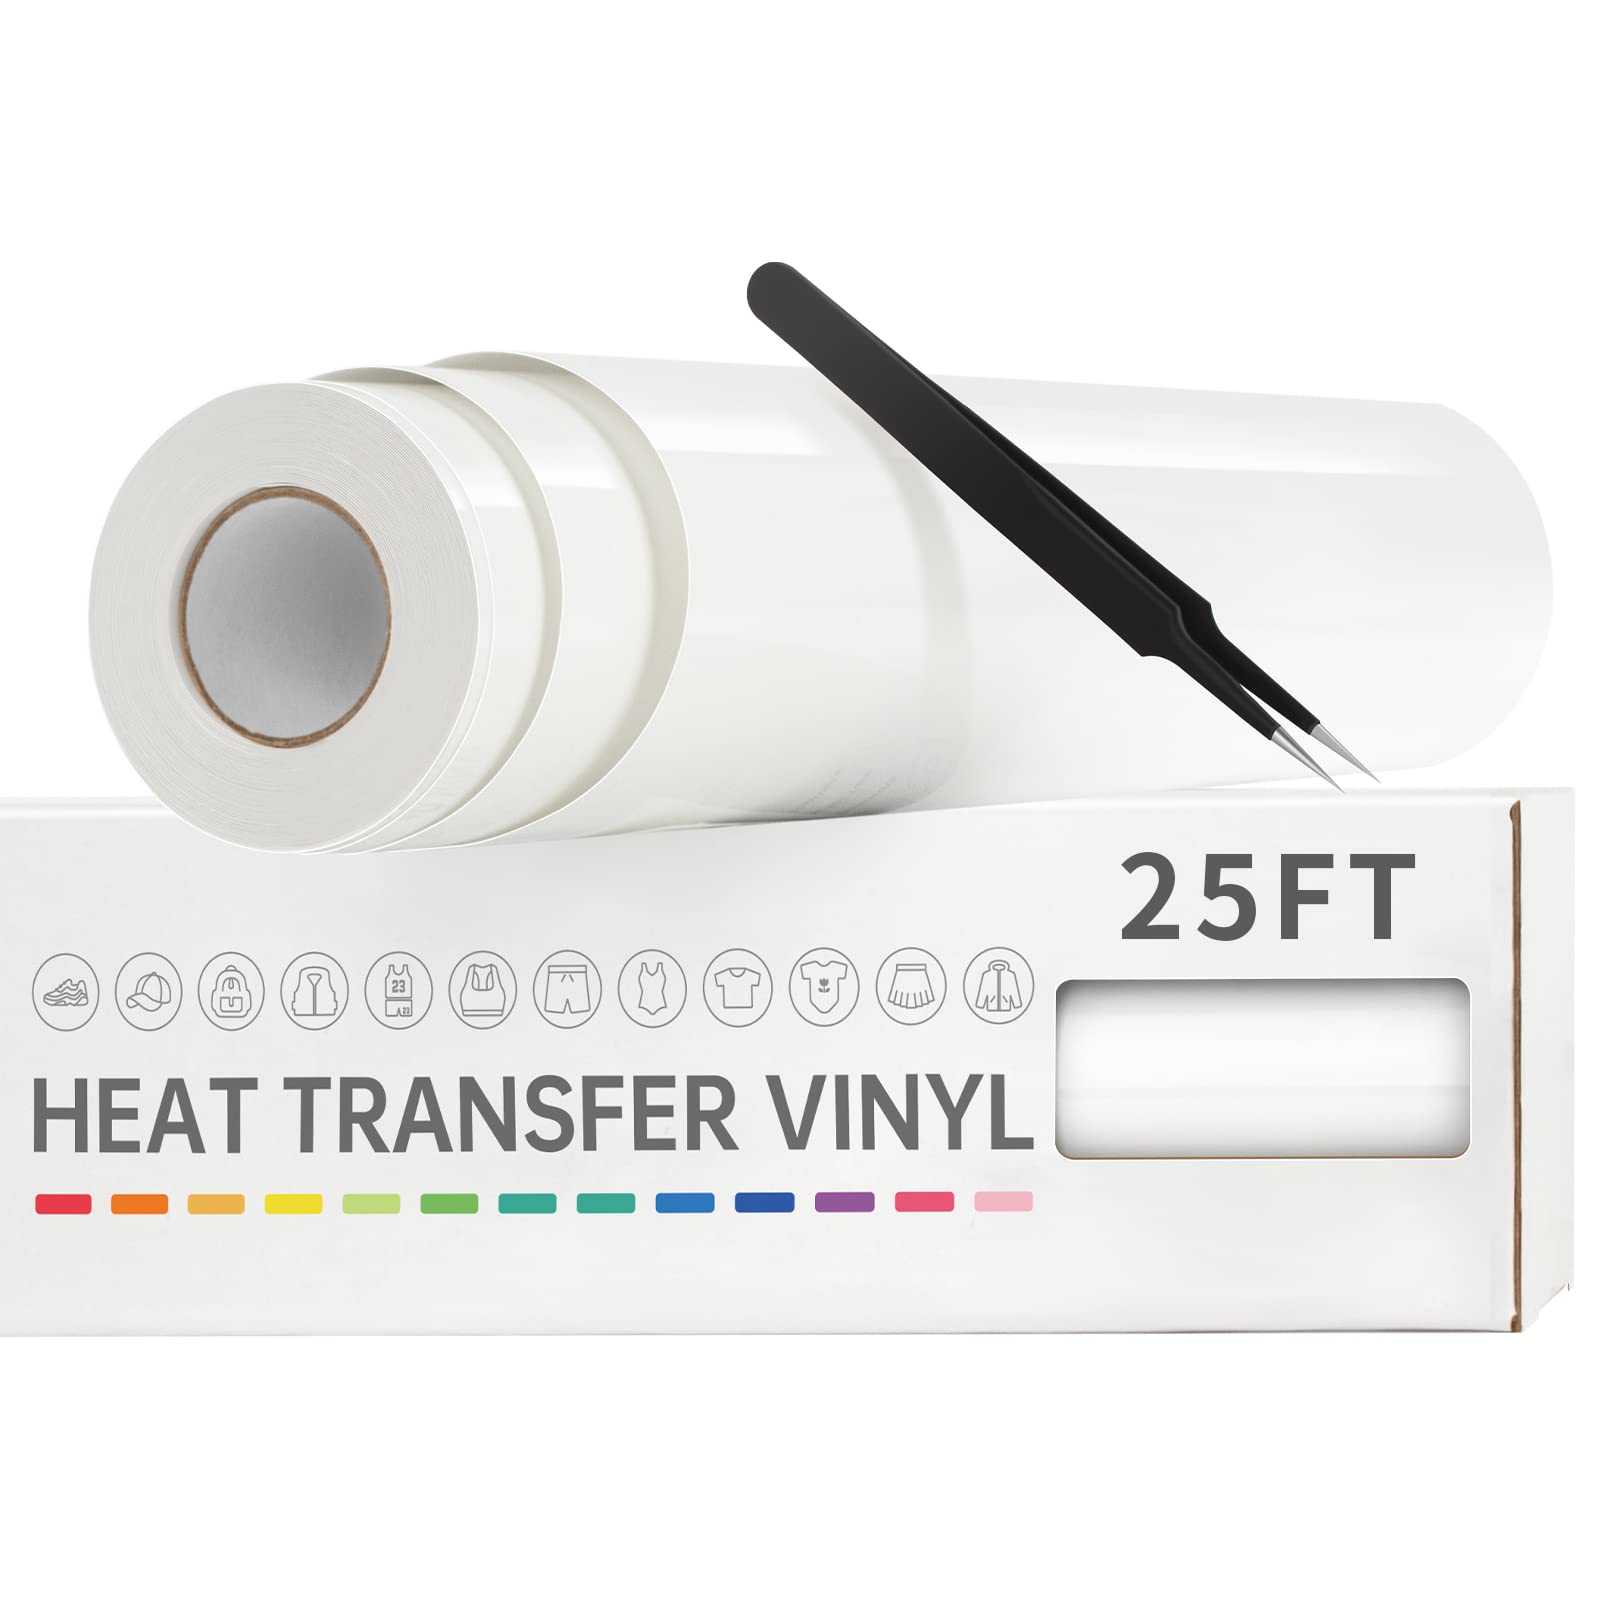 VinylRus Heat Transfer Vinyl-12” x 25ft Red Iron on Vinyl Roll for